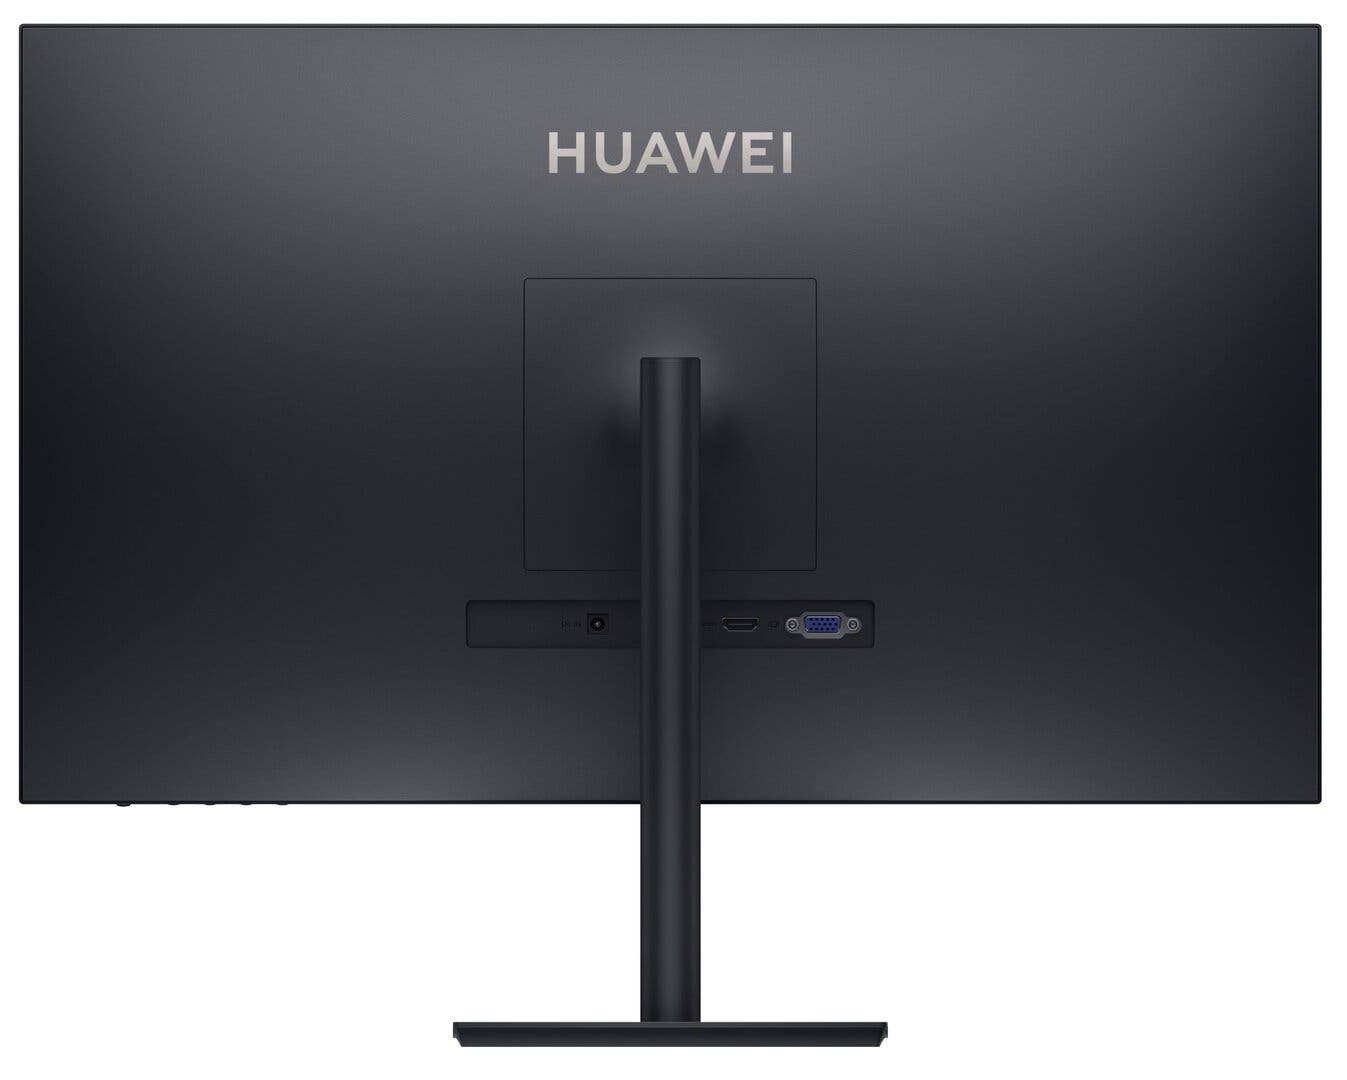 نمایشگر کامپیوتر huawei